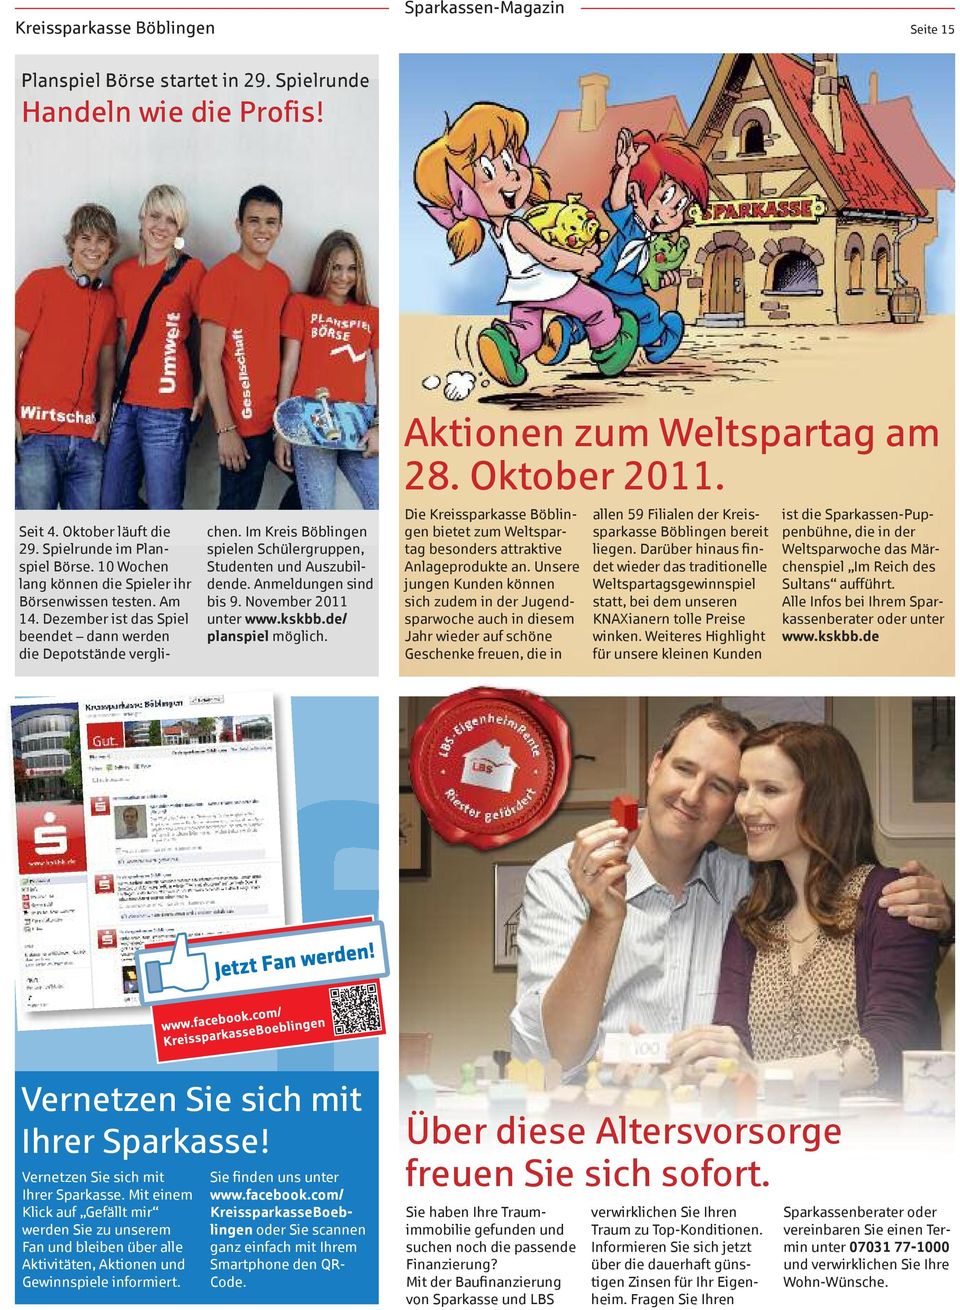 Im Kreis spielen Schülergruppen, Studenten und Auszu bil - den de. Anmeldungen sind bis 9. November 2011 unter www.kskbb.de/ planspiel möglich. Aktionen zum Weltspartag am 28. Oktober 2011.